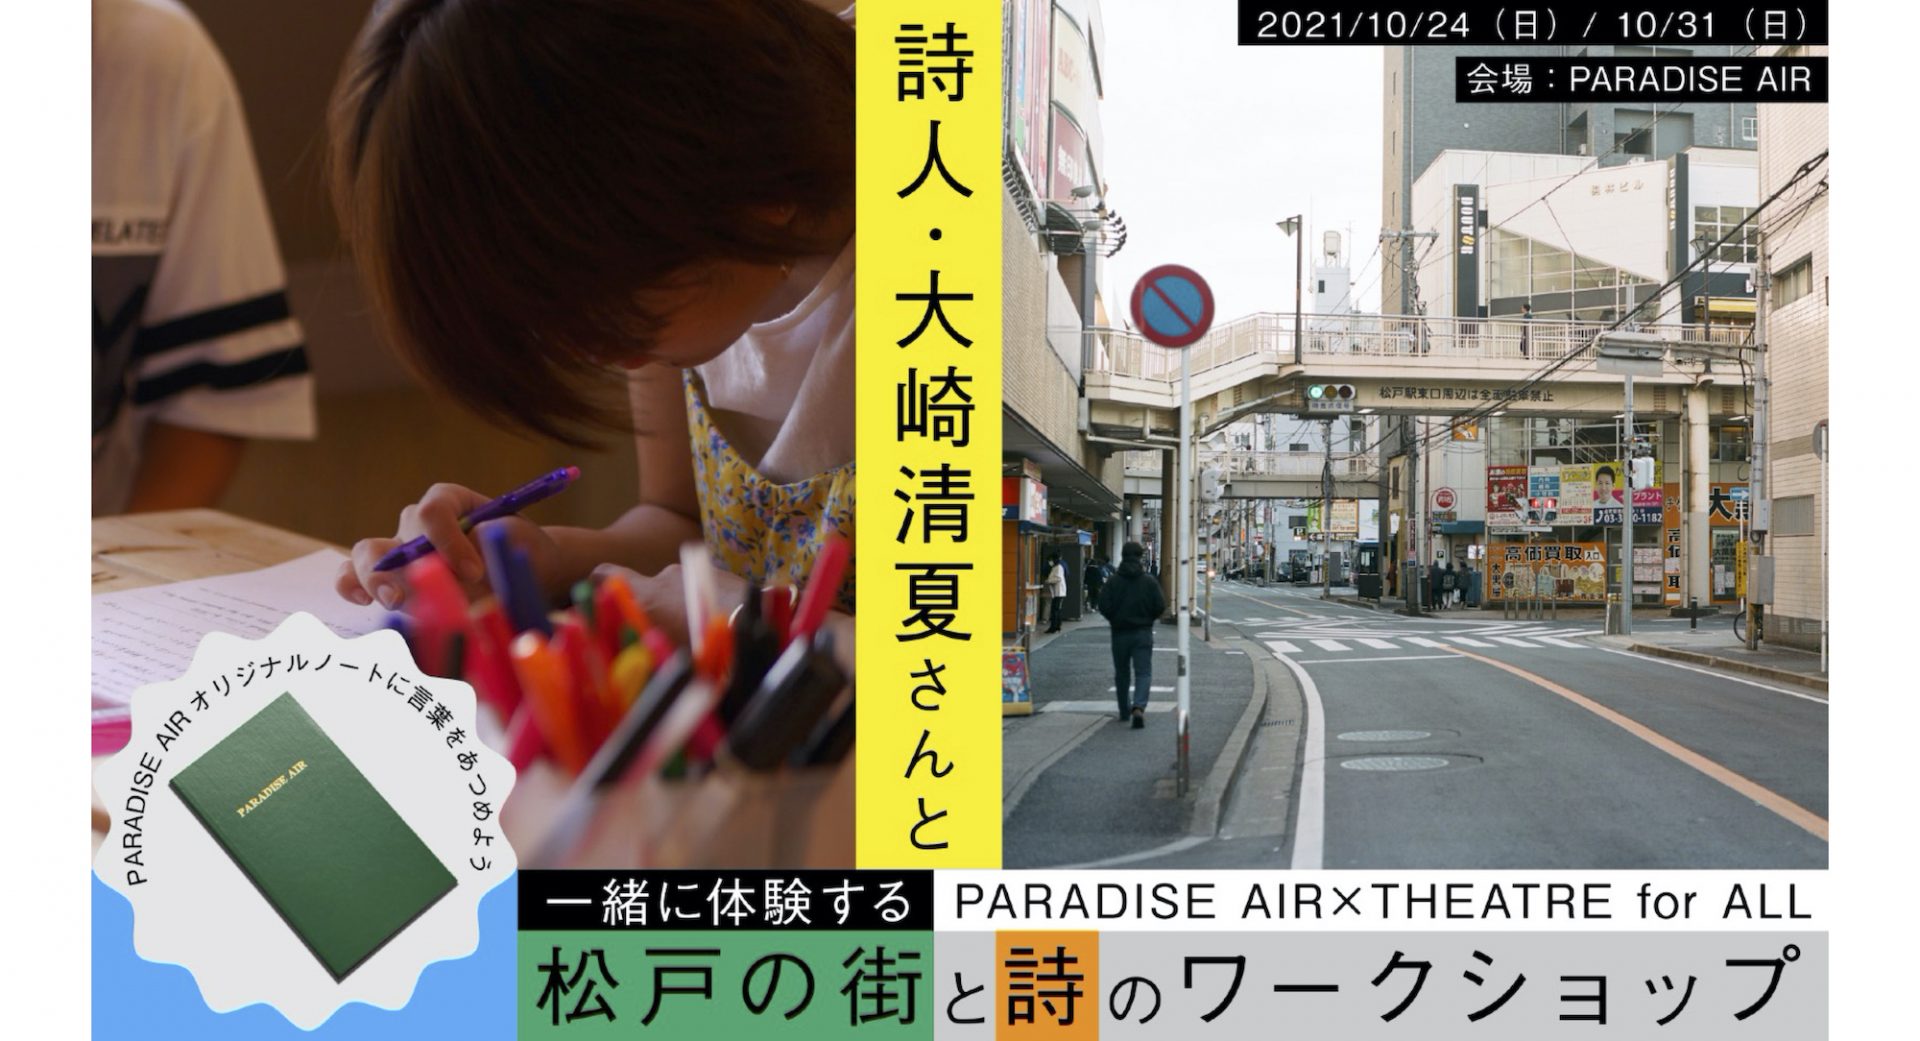 詩人・大崎清夏さんと一緒に体験する松戸の街と詩のワークショップ